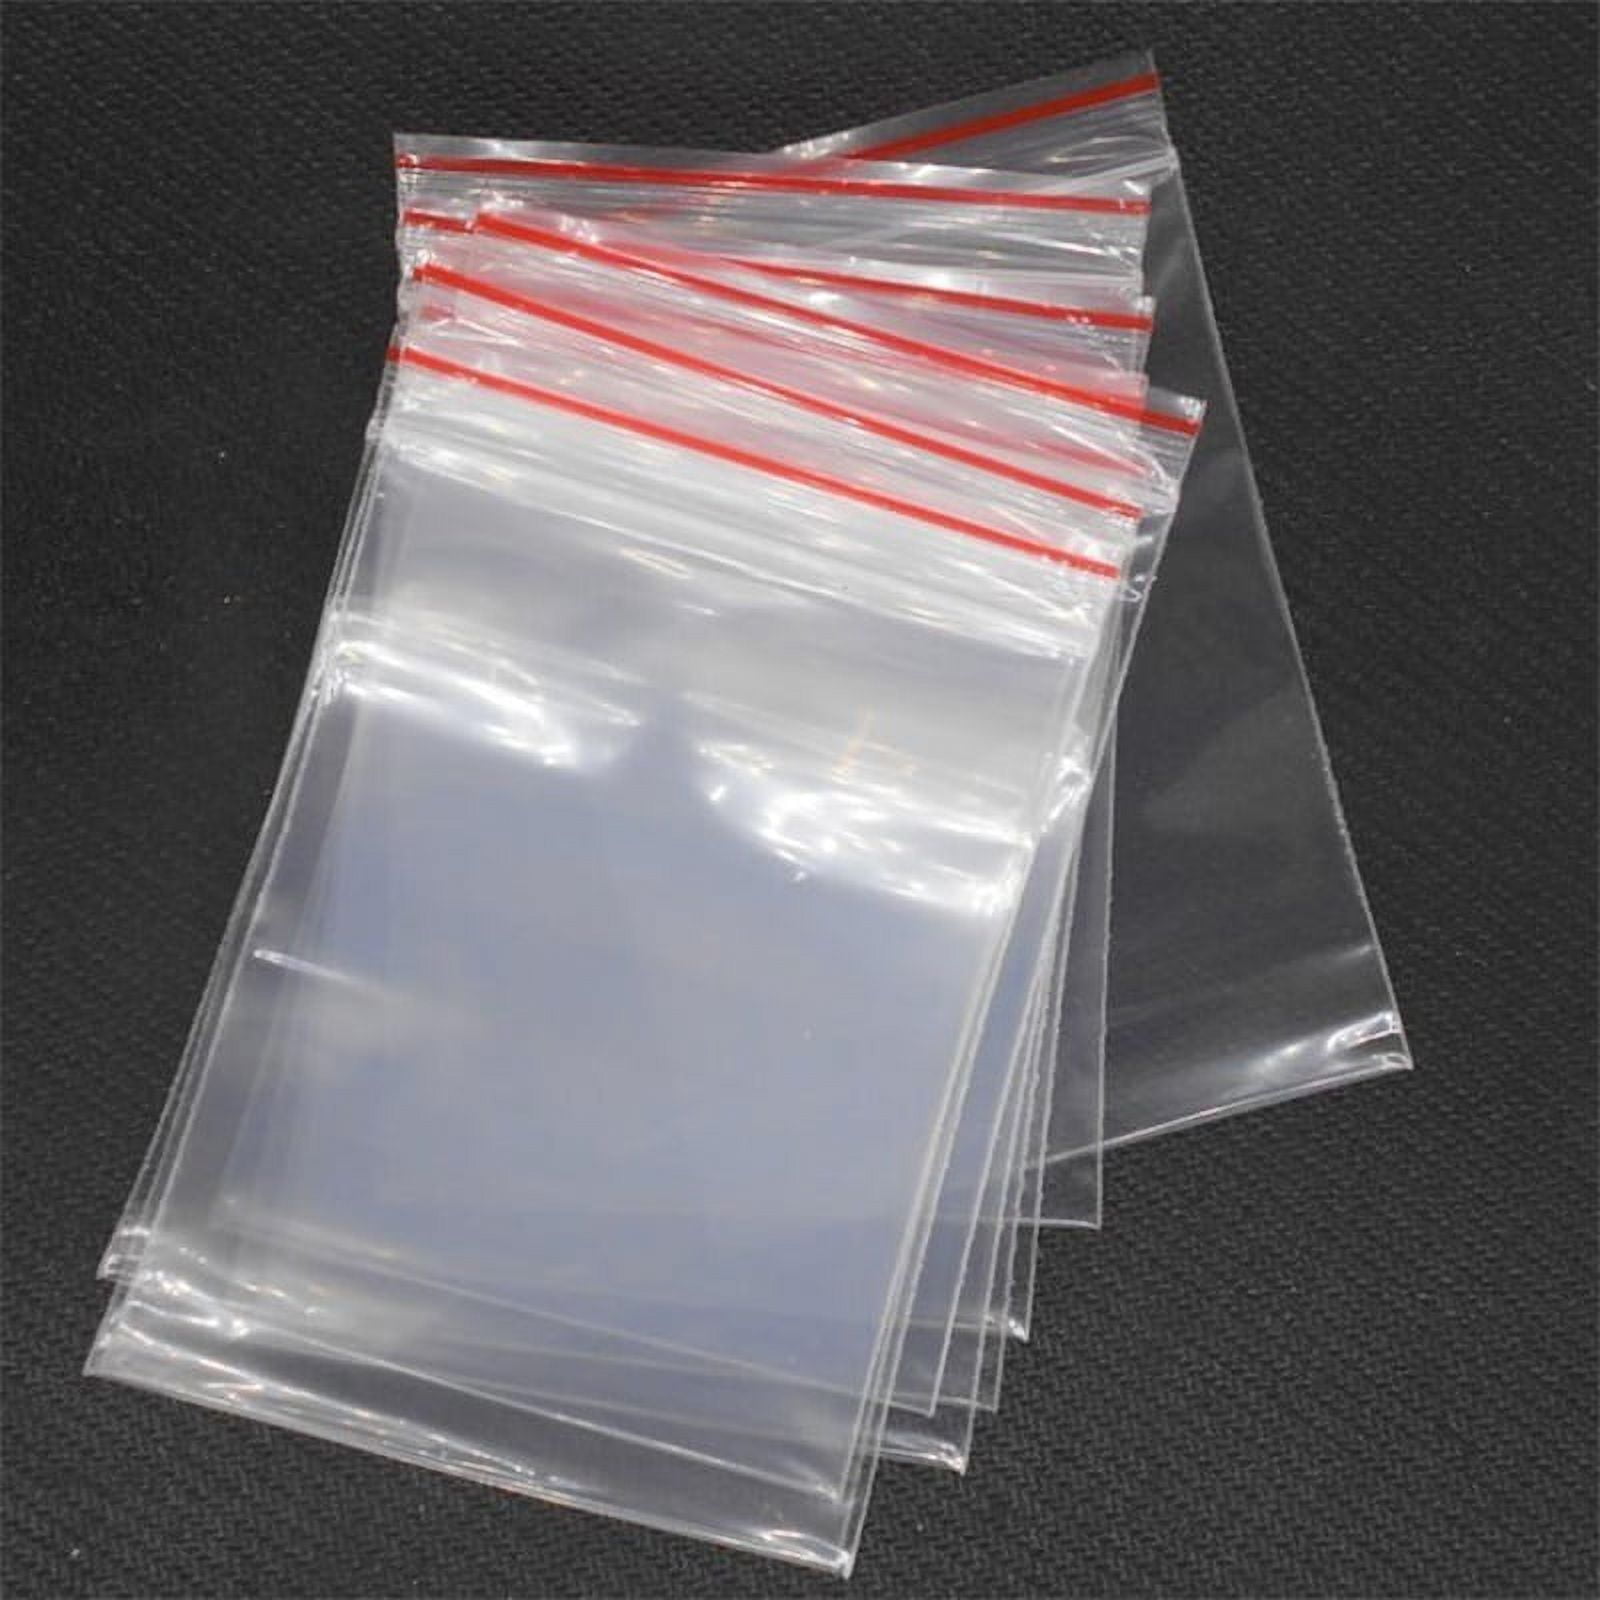 Clear Poly Ziploc Plastic Bag (100pc/pkg)